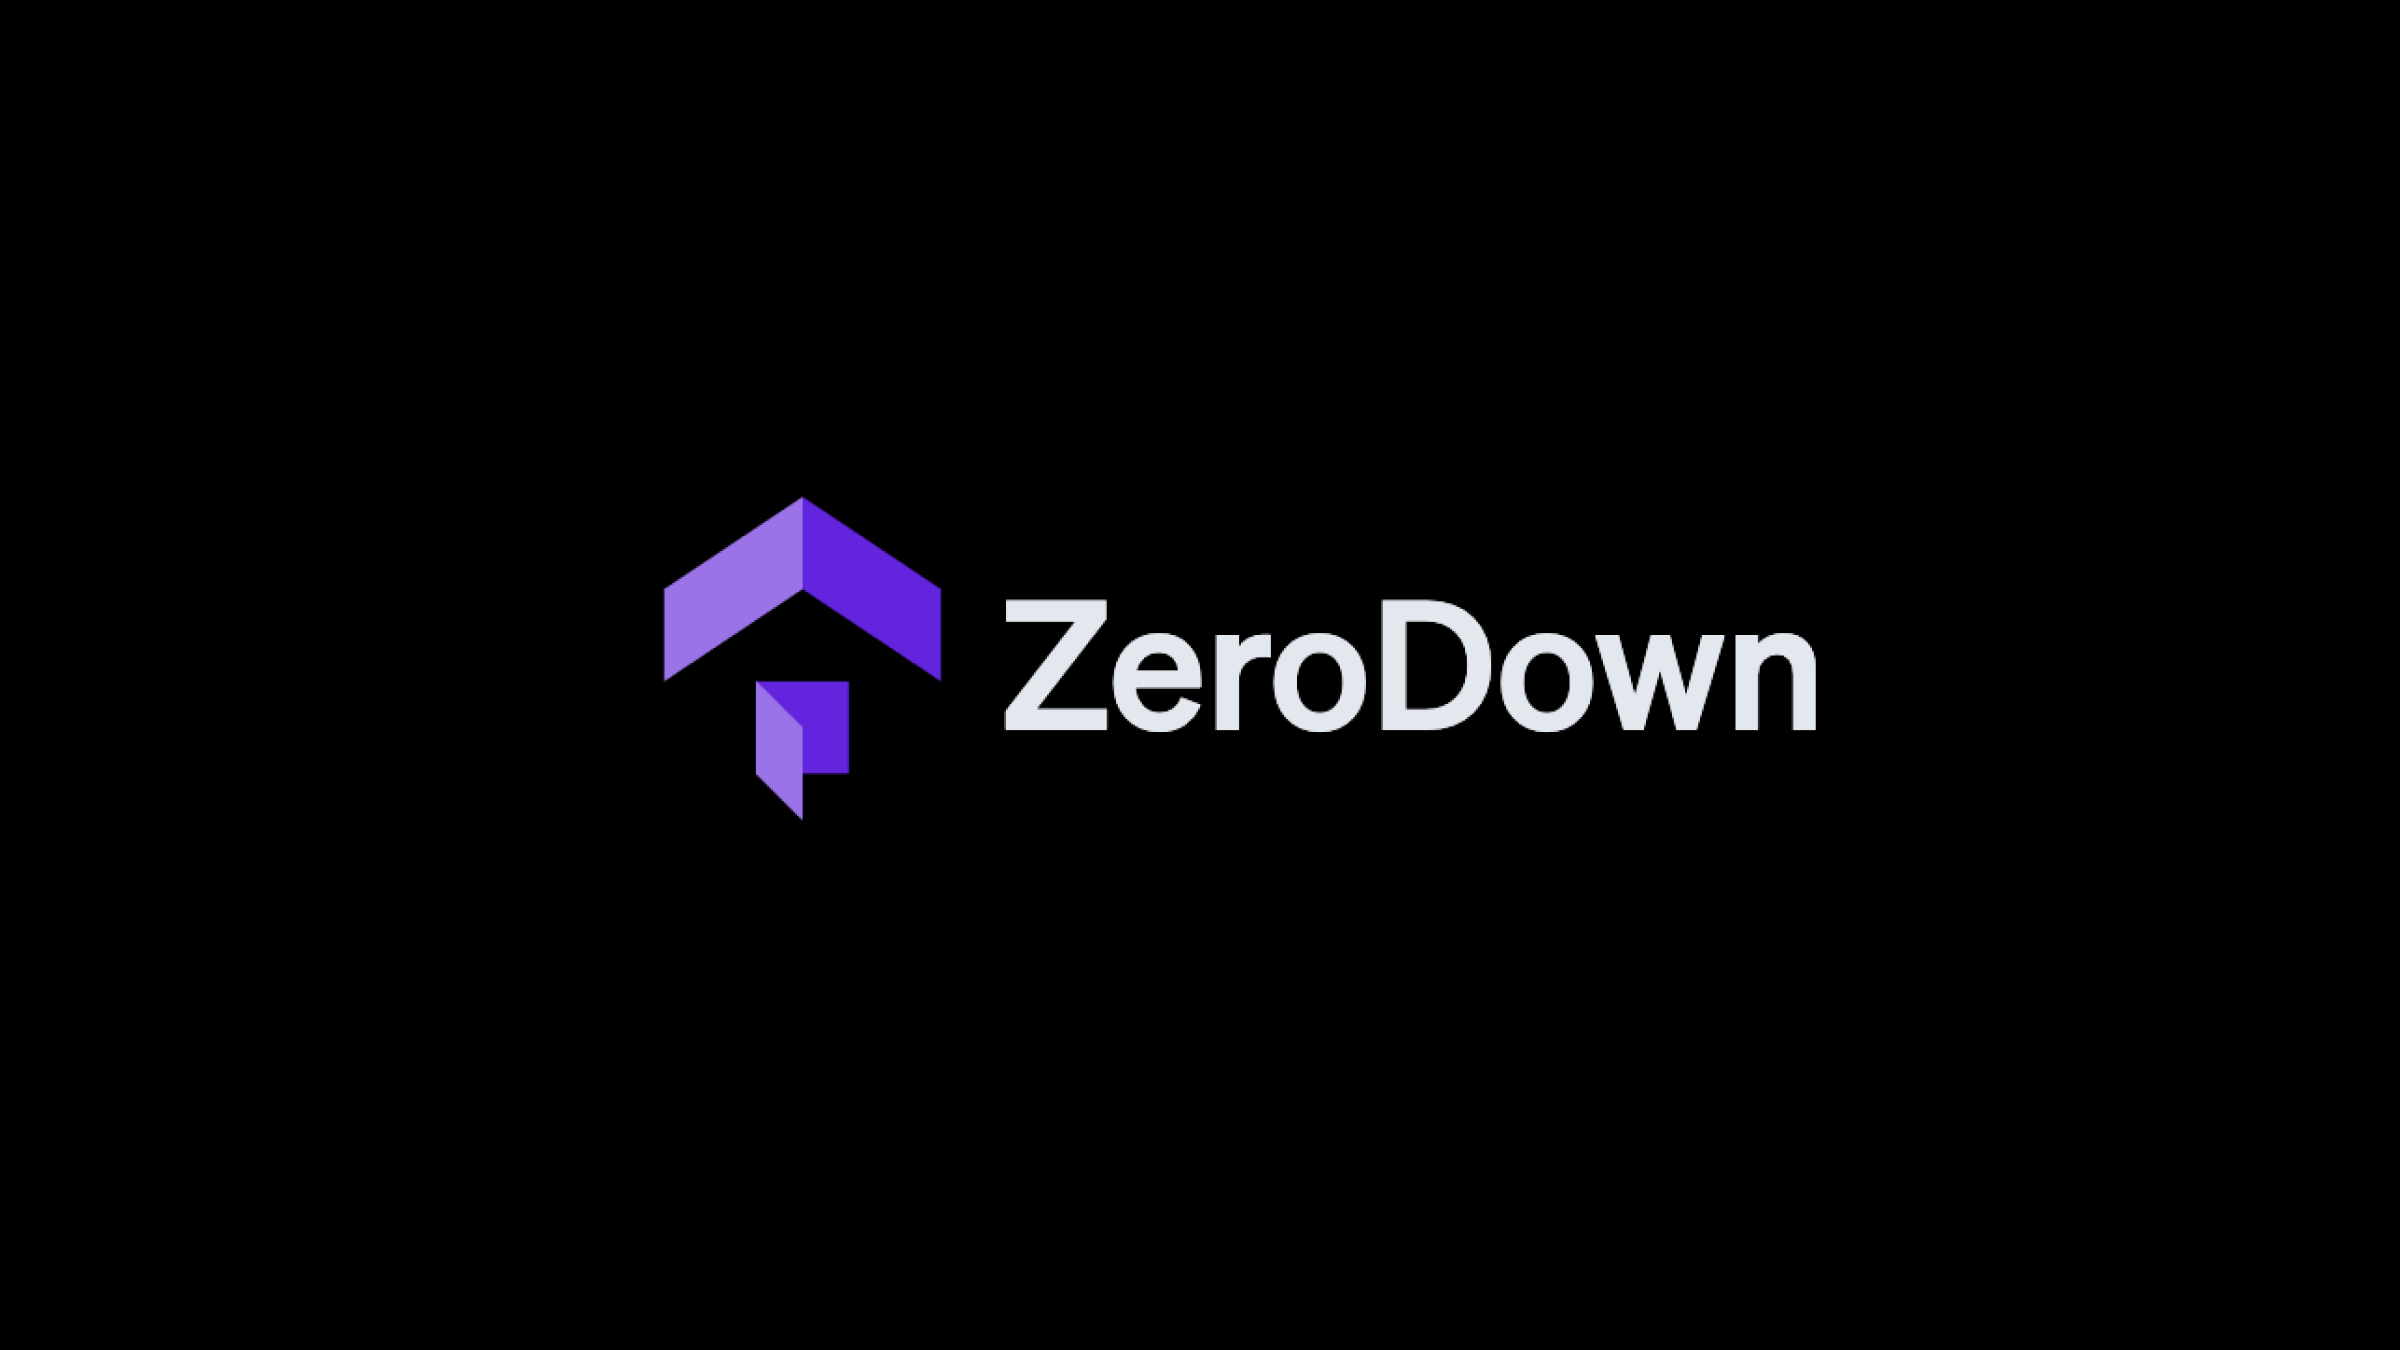 ZeroDown